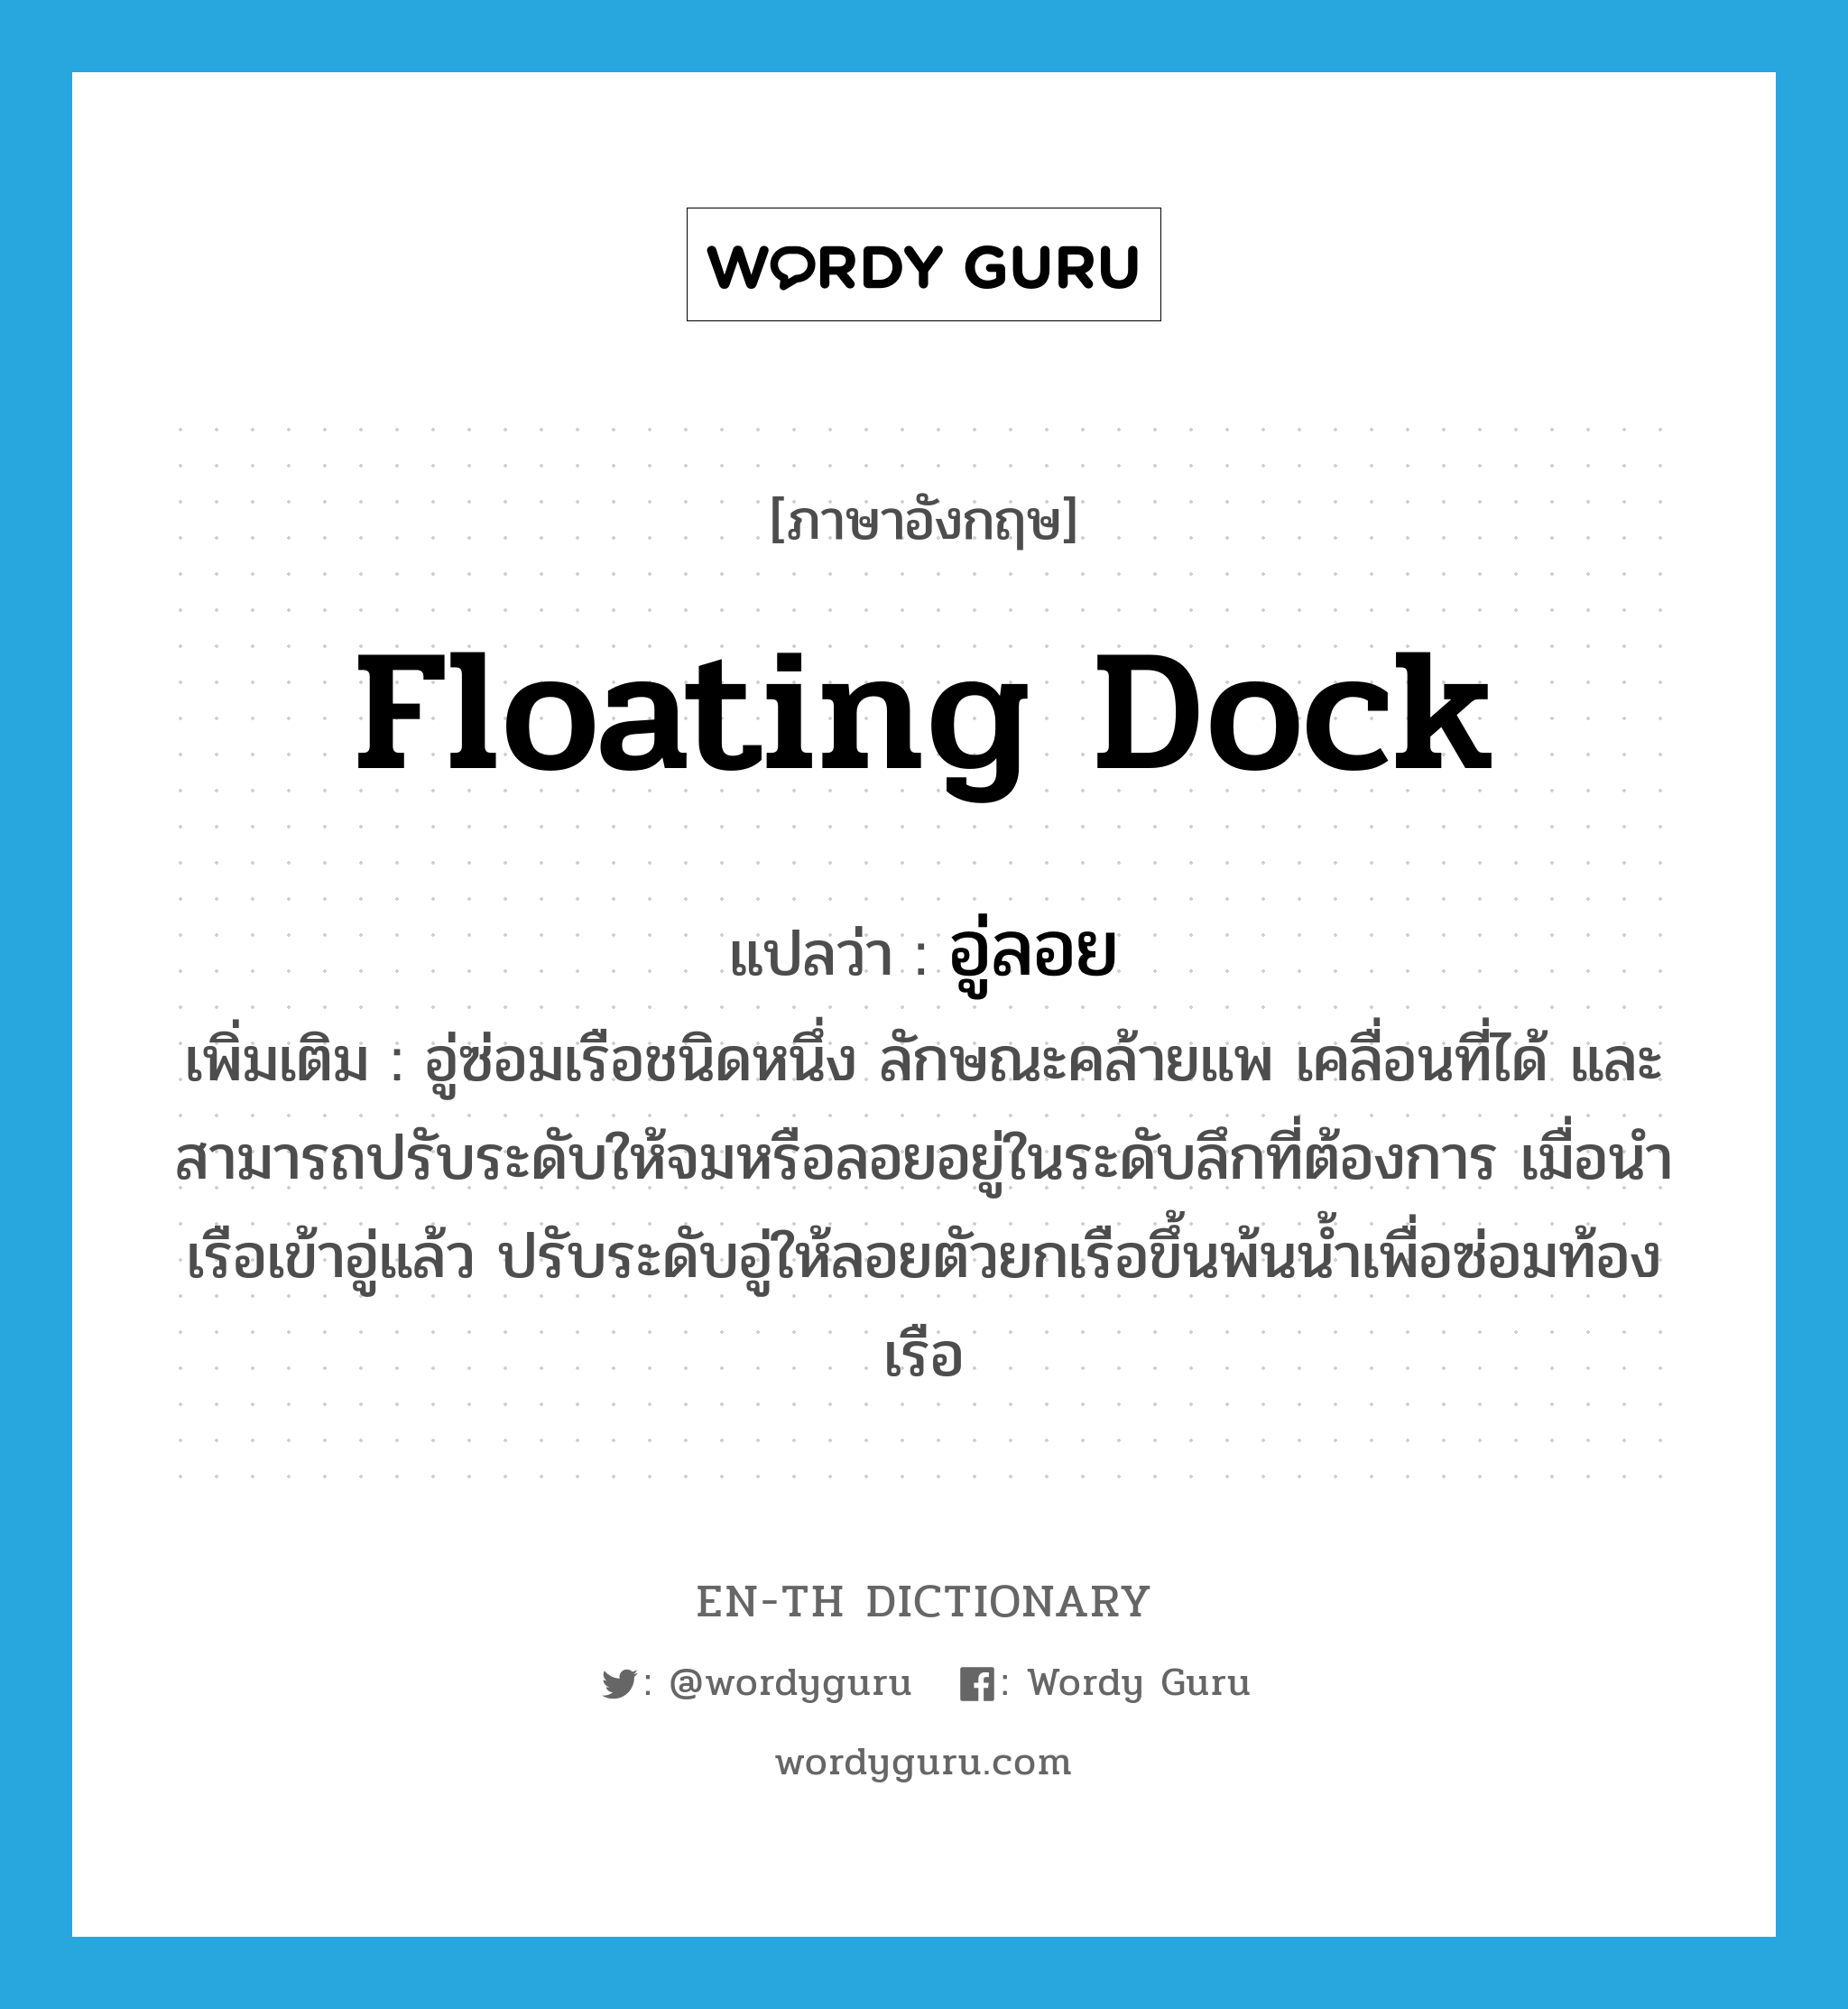 floating dock แปลว่า?, คำศัพท์ภาษาอังกฤษ floating dock แปลว่า อู่ลอย ประเภท N เพิ่มเติม อู่ซ่อมเรือชนิดหนึ่ง ลักษณะคล้ายแพ เคลื่อนที่ได้ และสามารถปรับระดับให้จมหรือลอยอยู่ในระดับลึกที่ต้องการ เมื่อนำเรือเข้าอู่แล้ว ปรับระดับอู่ให้ลอยตัวยกเรือขึ้นพ้นน้ำเพื่อซ่อมท้องเรือ หมวด N